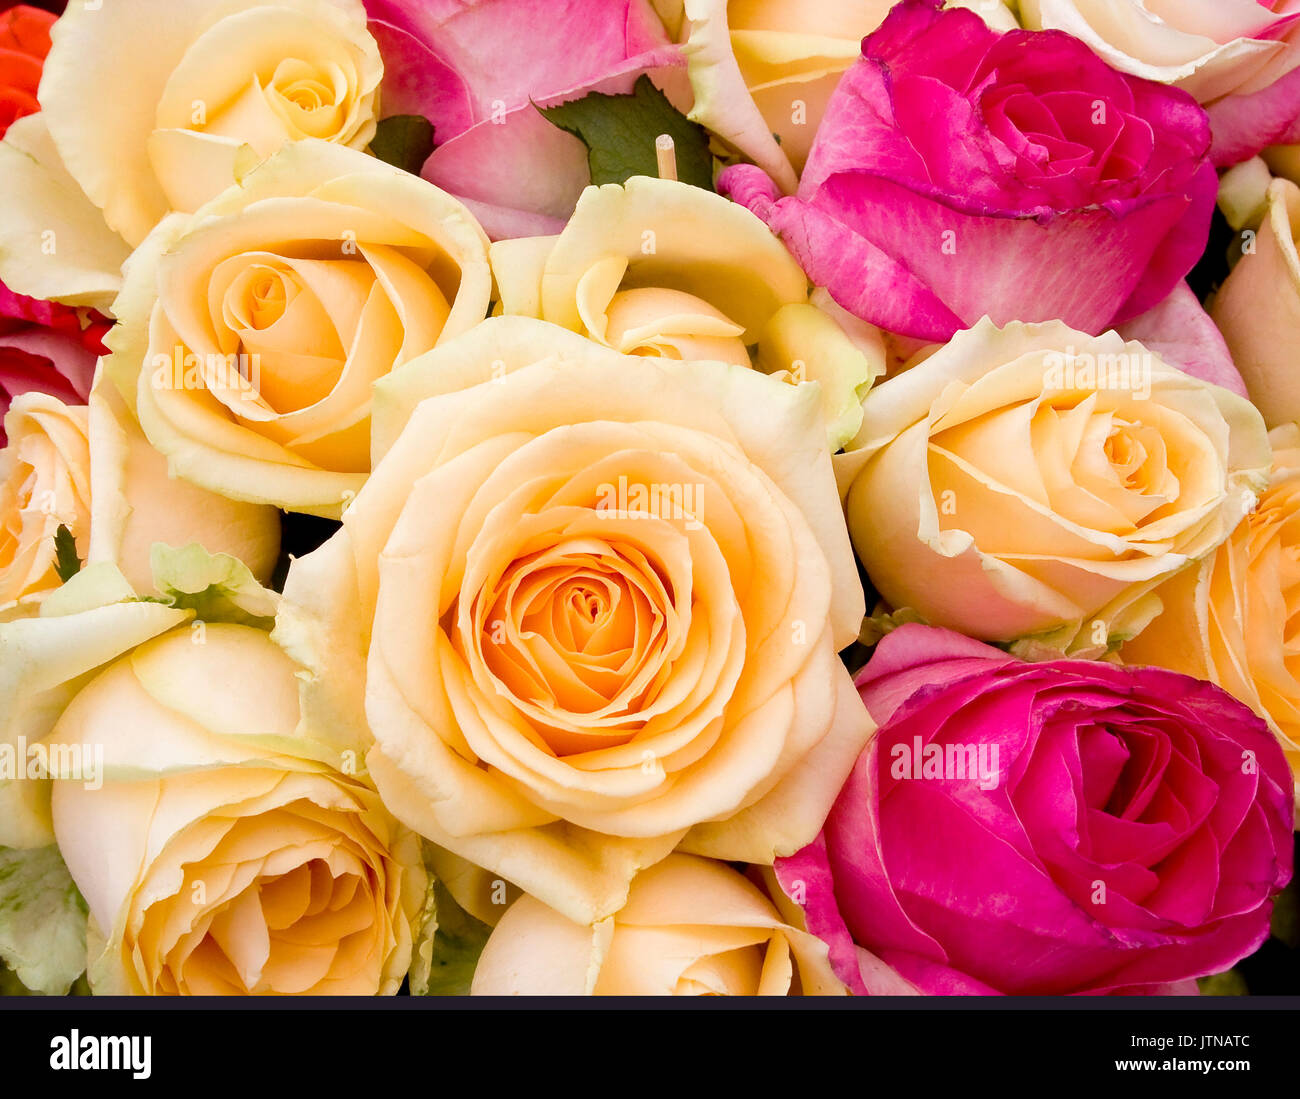 Bunte Rosen Hintergrund. Ein Strauß wunderschöner Rosen hautnah. Stockfoto